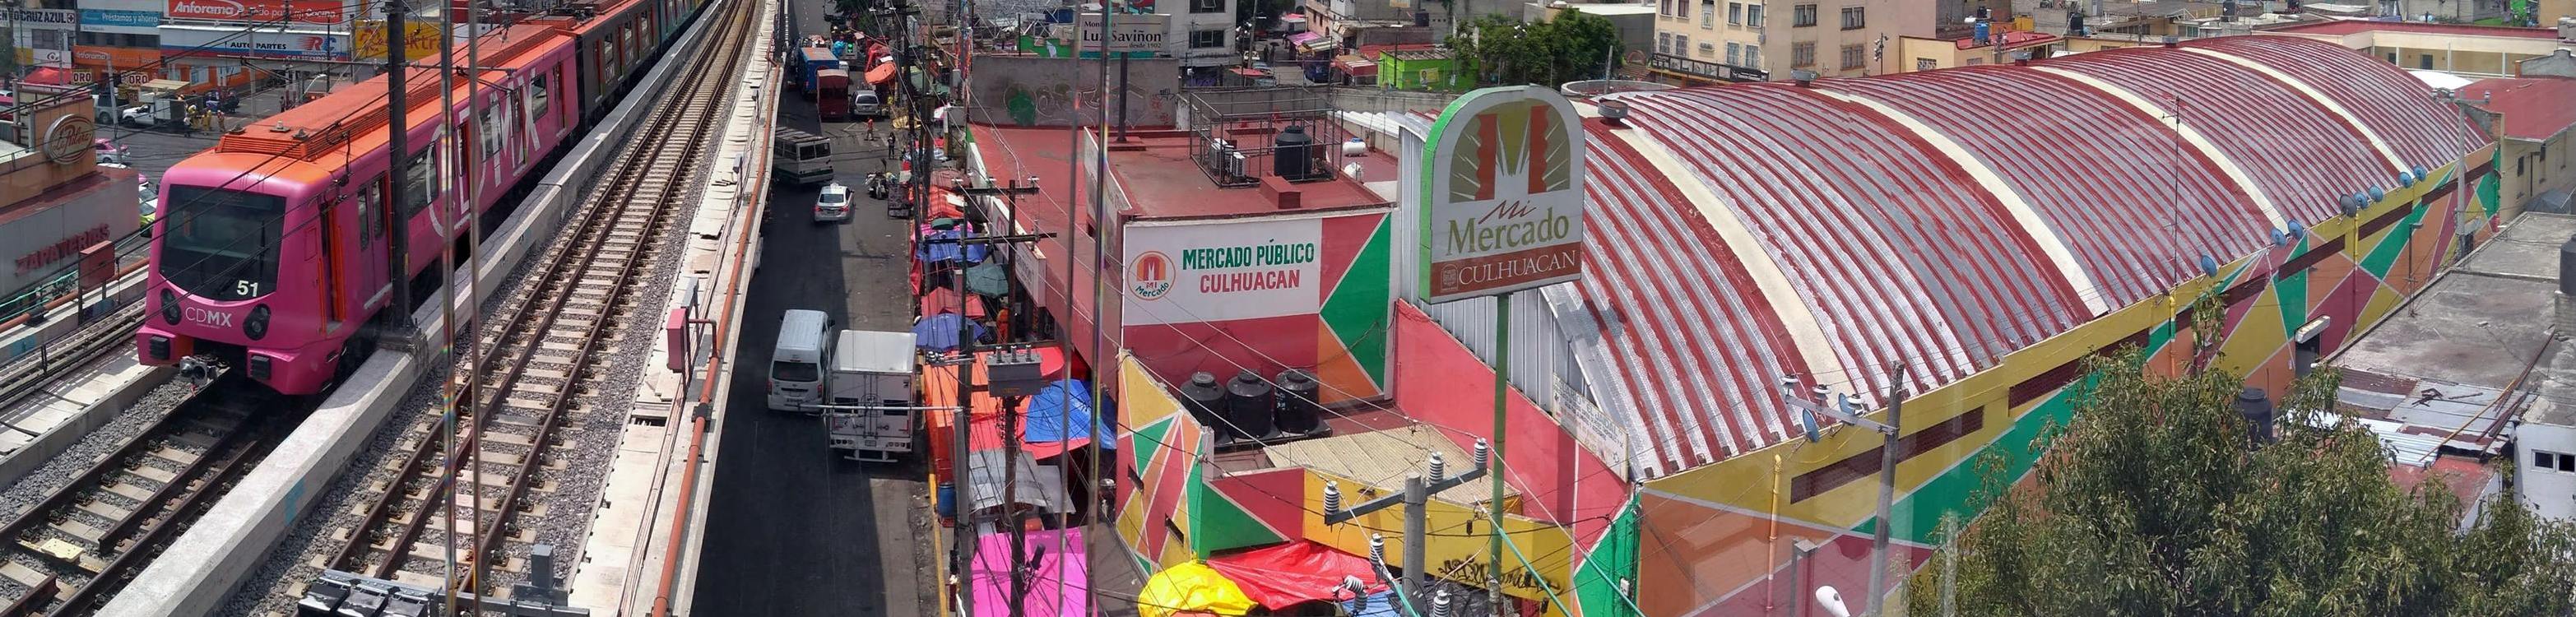 Mercado de Culhuacan